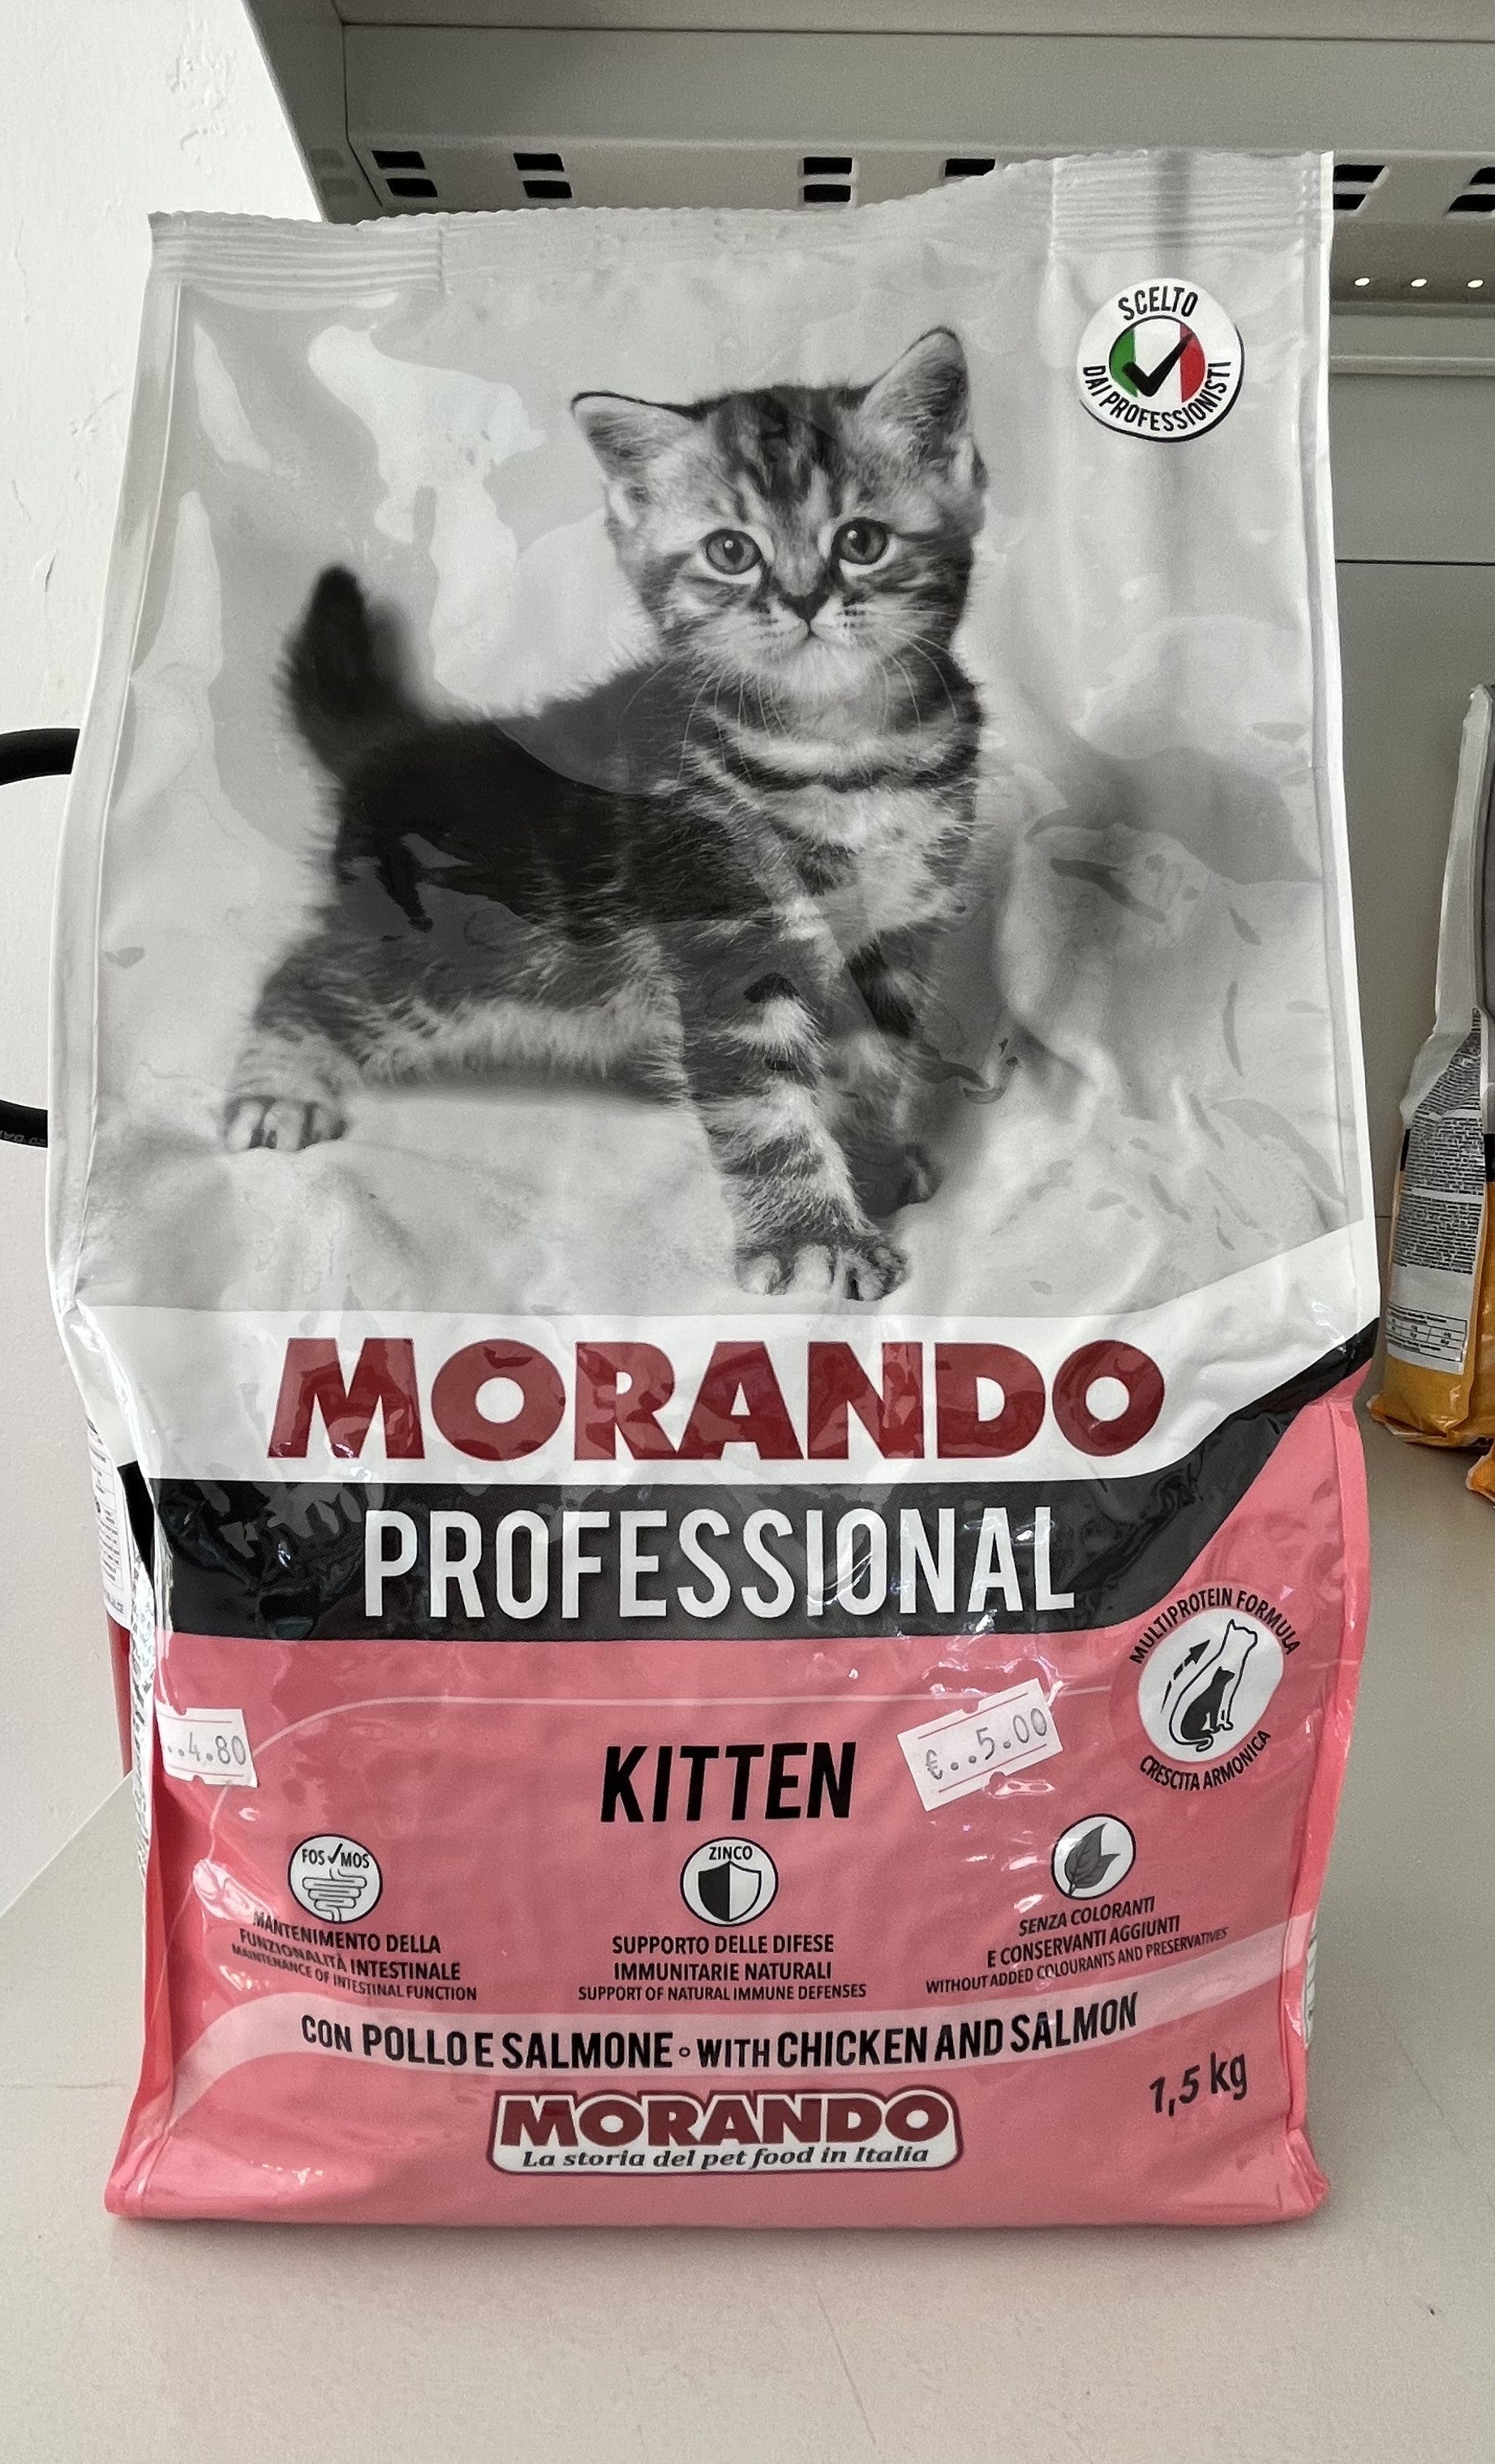 Pets - Morando - Croccantini - Gatti - Professional - Kitten - Pollo - Salmone - 1,5 Kg